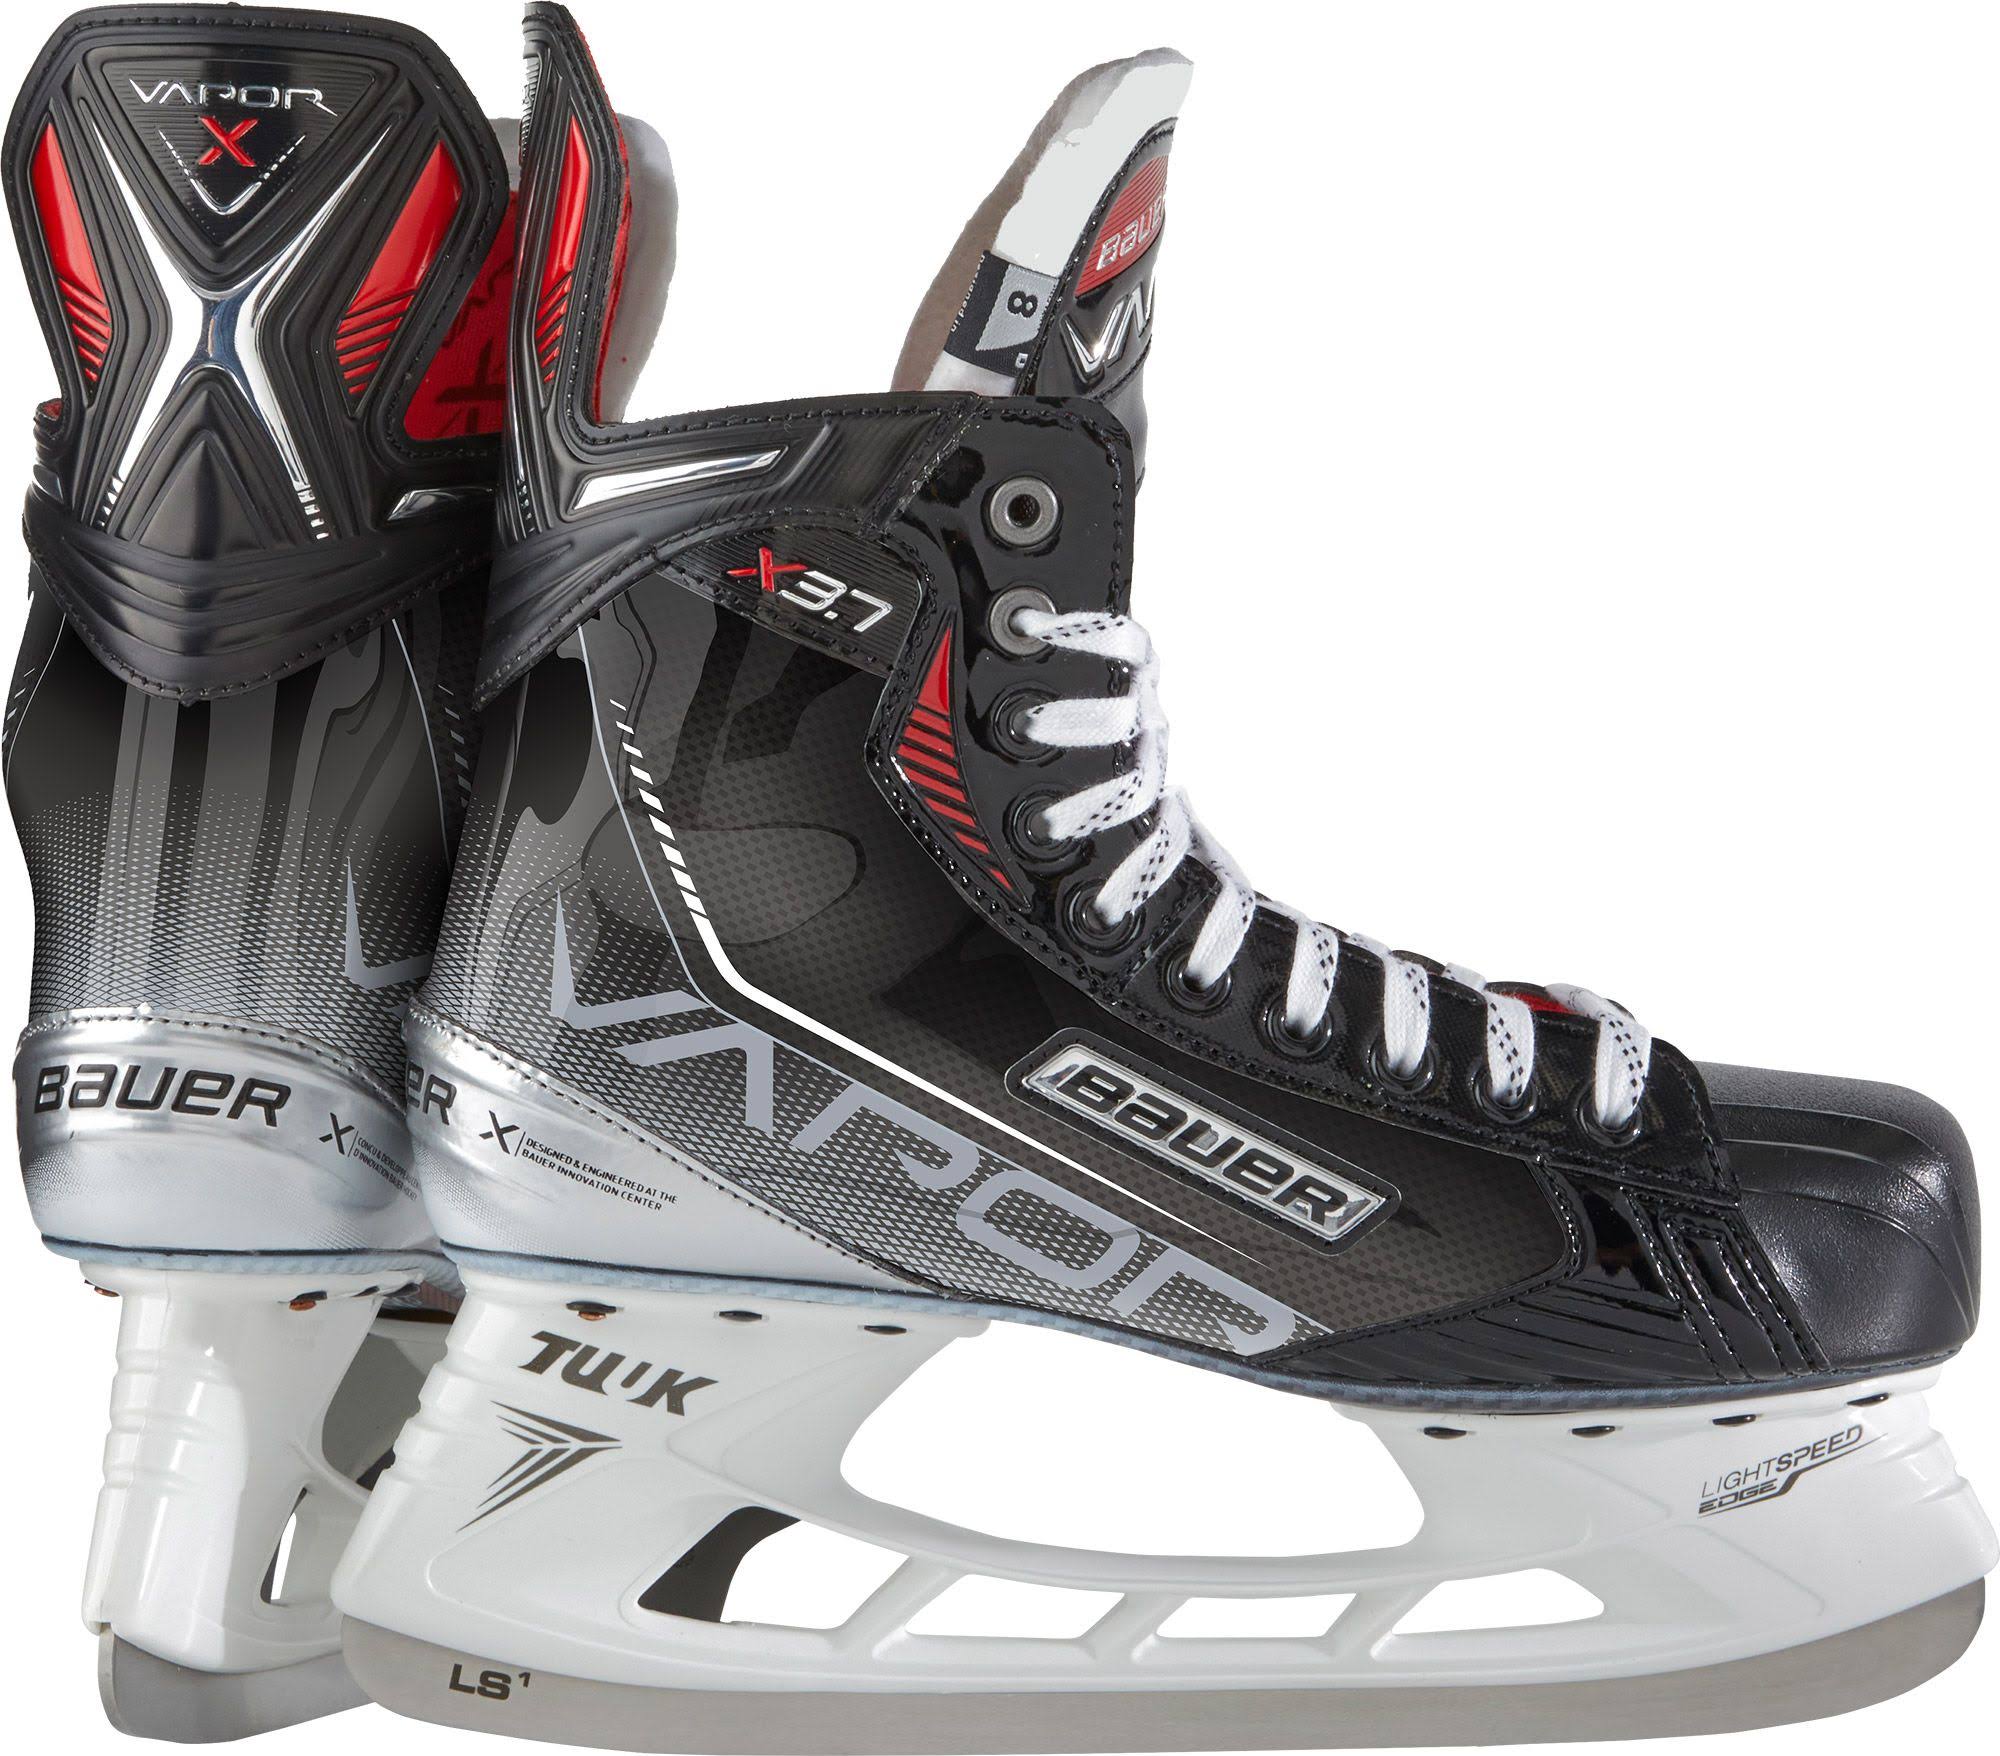 Bauer Vapor X3.7 Ice Hockey Skates - Senior - 7.0 - D